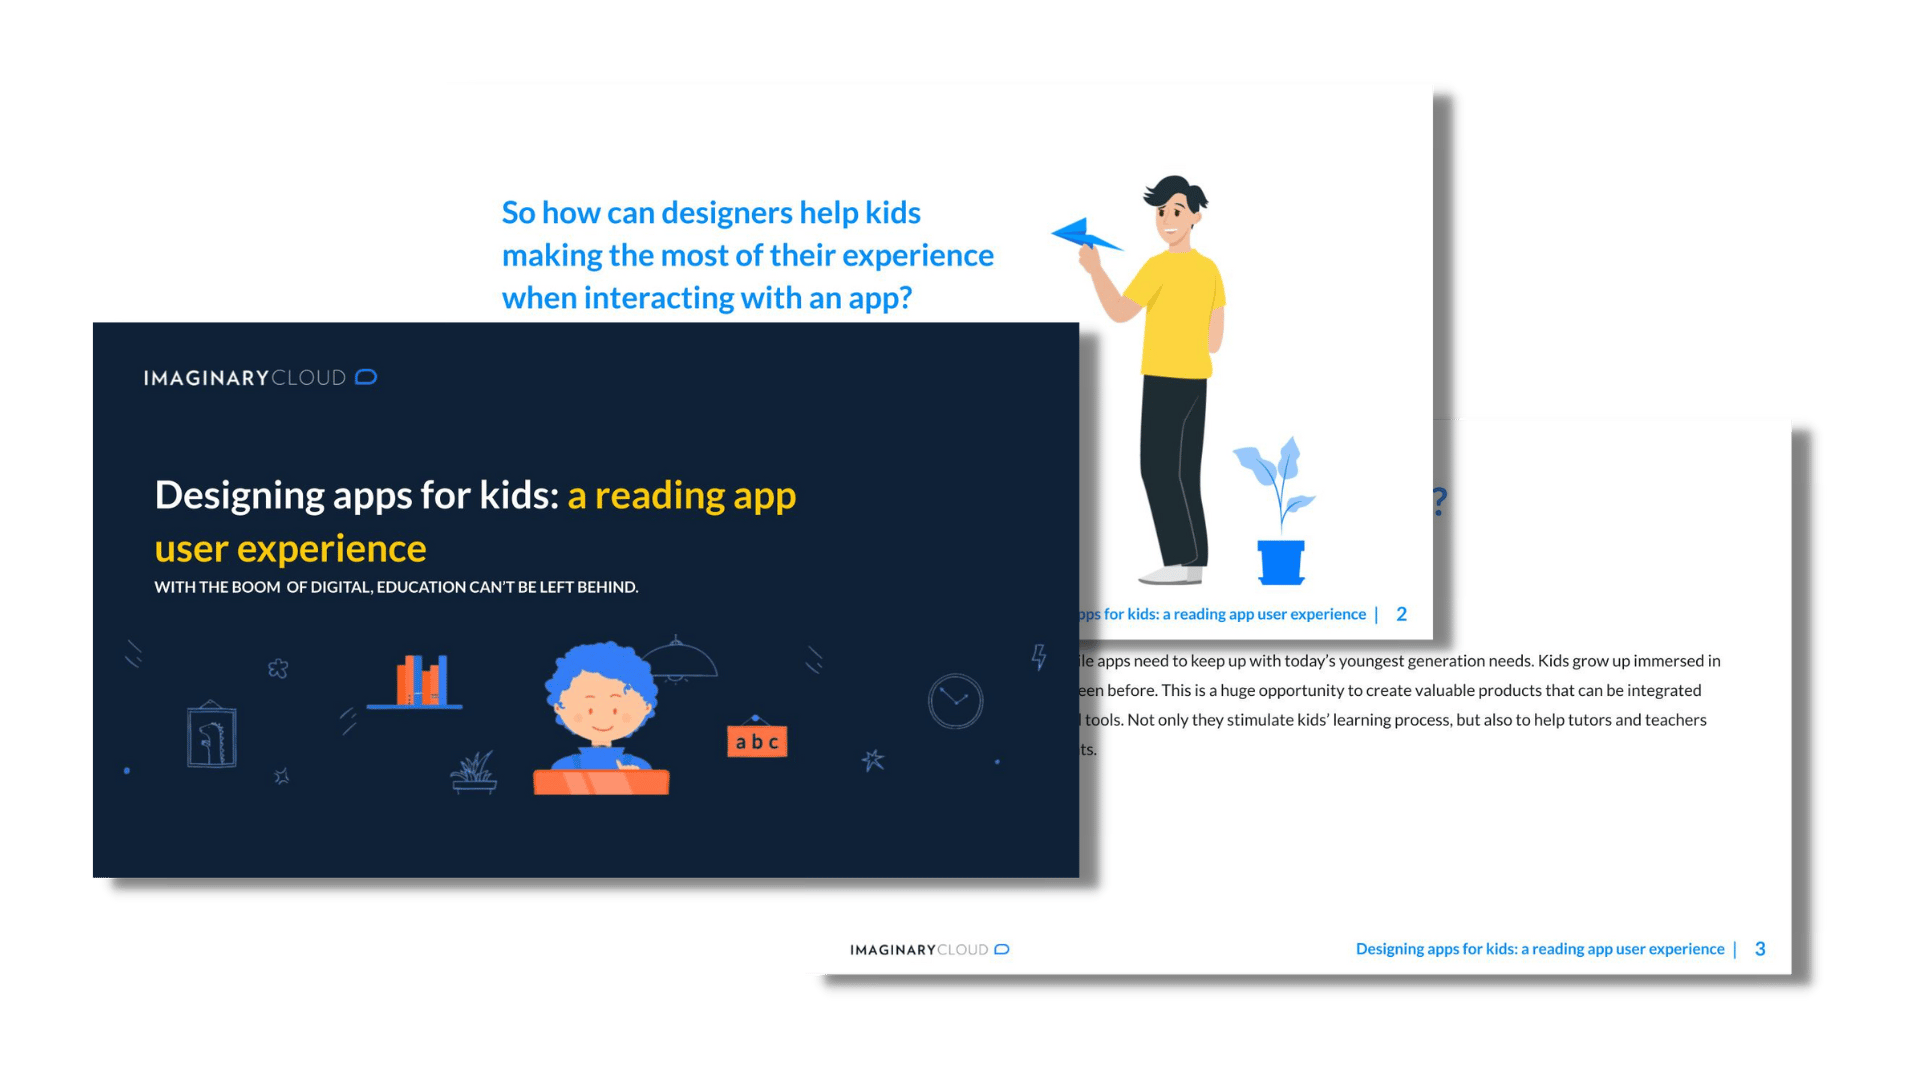 Designing apps for kids